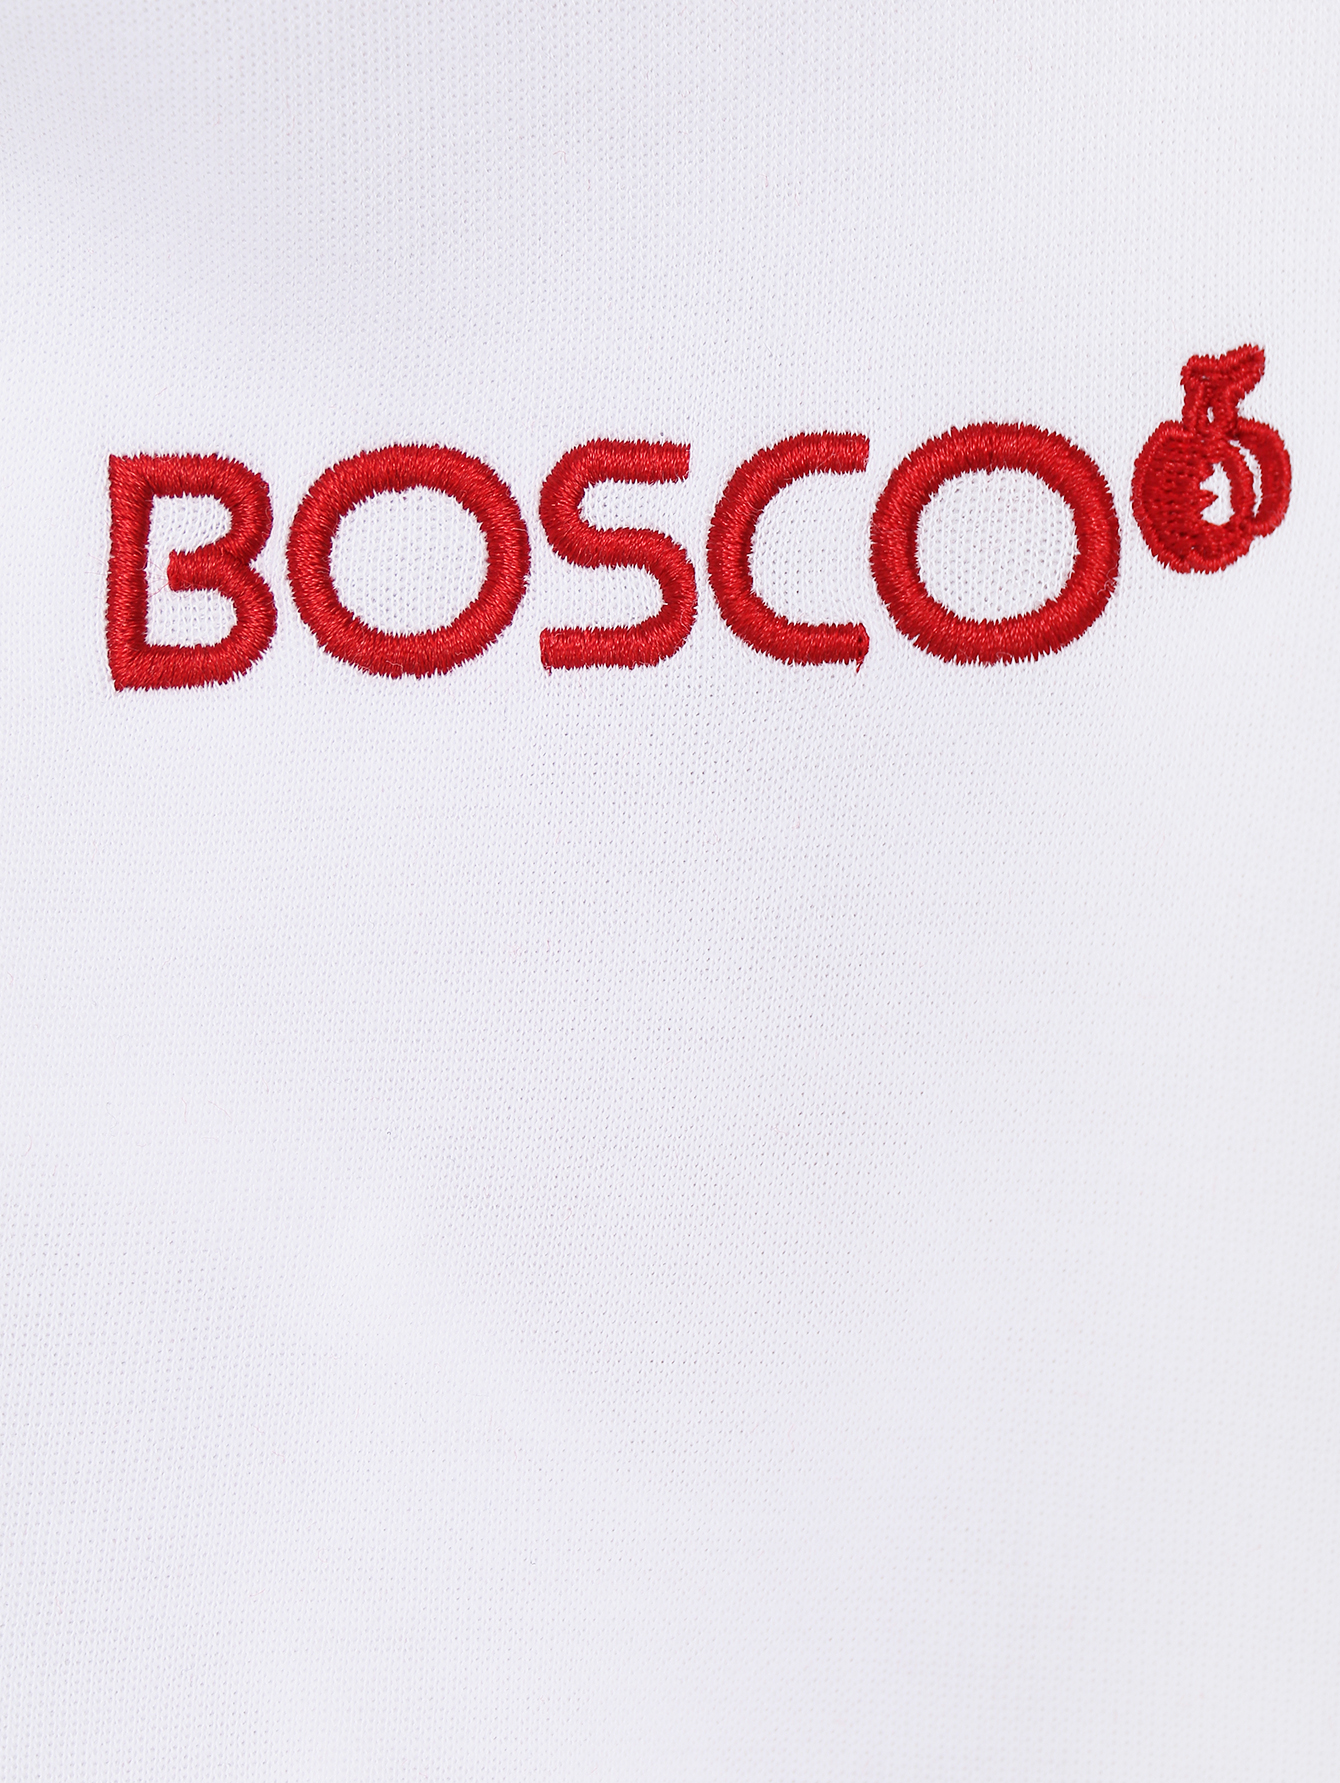 Боско пятерочка. Bosco логотип. Боско надпись. Bosco Sport надпись. Логотип Боско спорт.